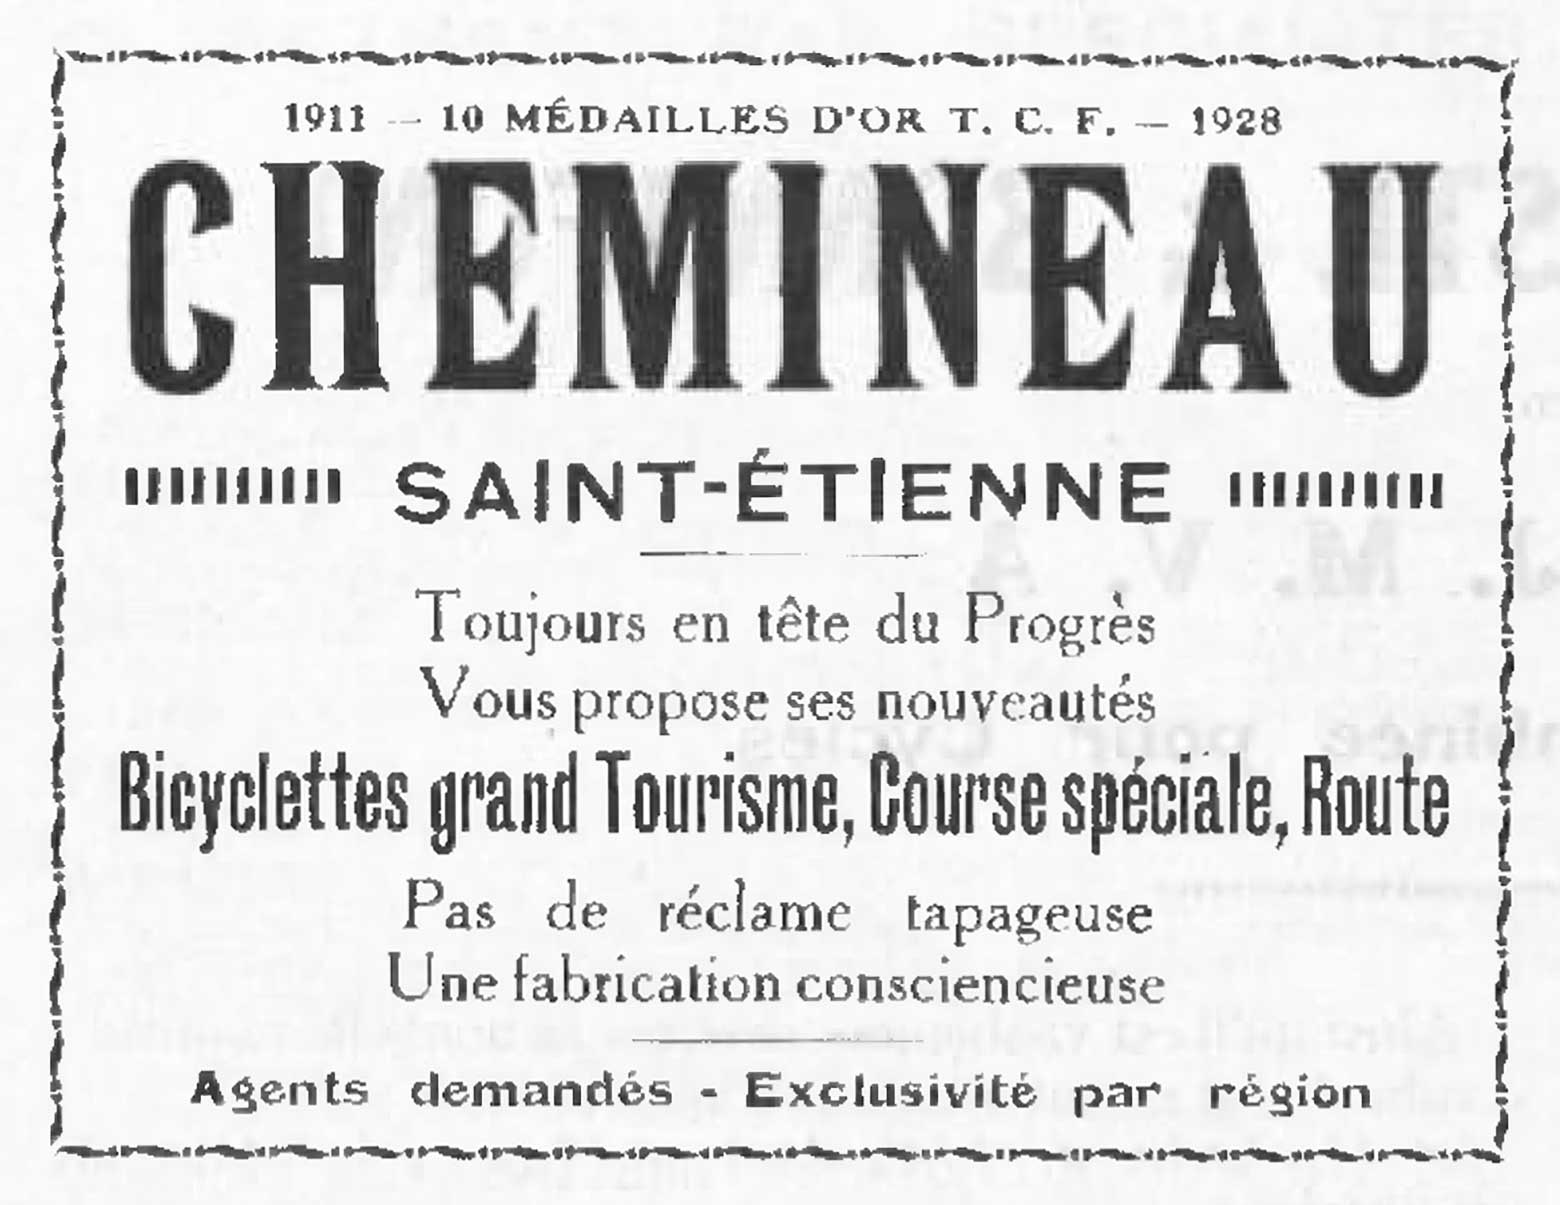 L'Industrie des Cycles et Automobiles January 1928 - Chemineau advert main image